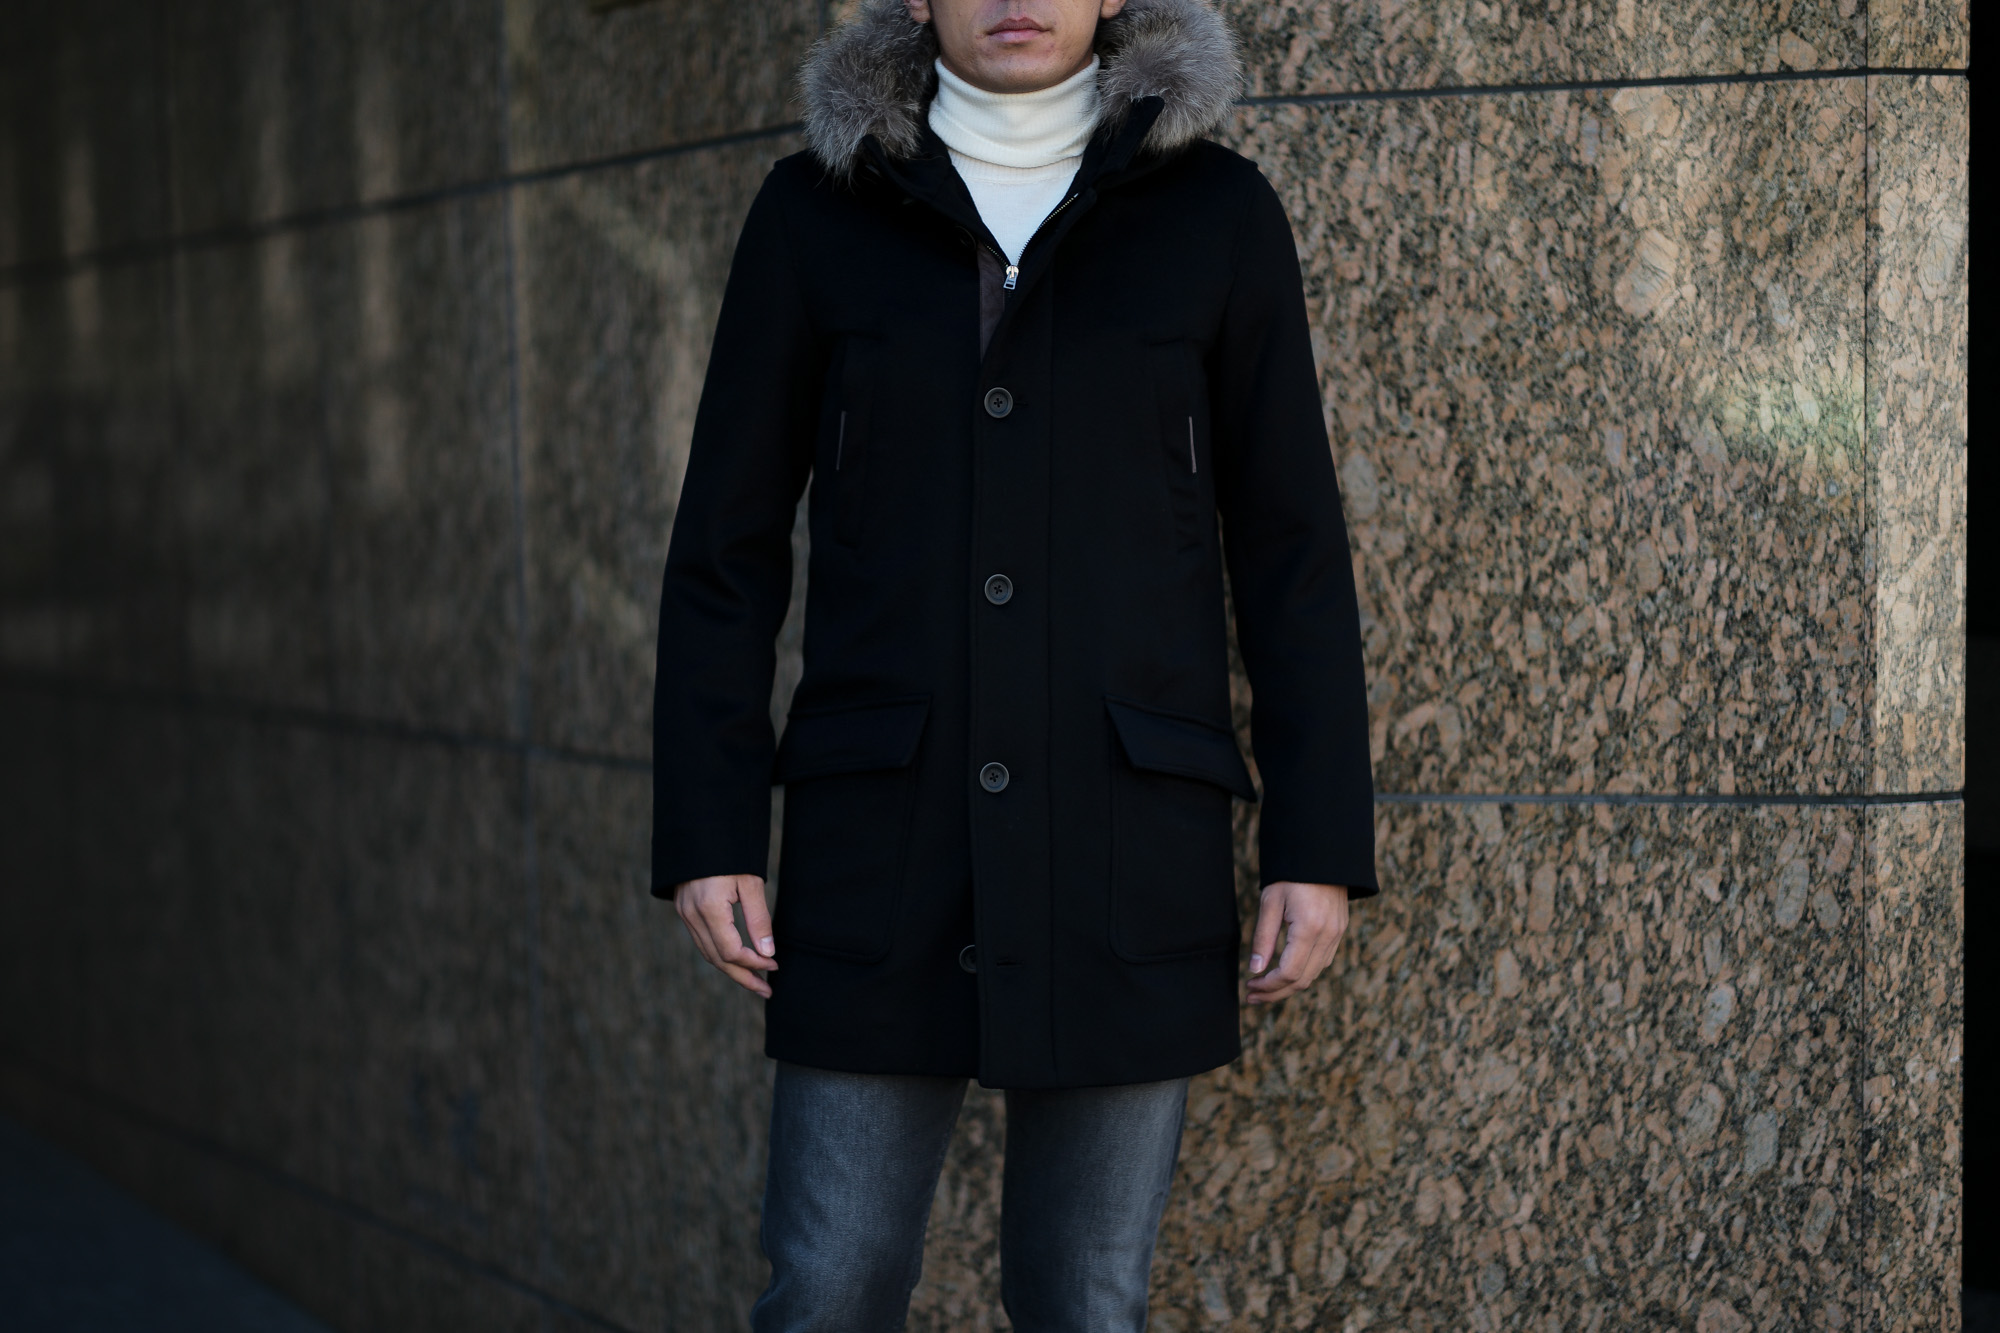 HERNO(ヘルノ) N-3B Cashmere coat (カシミア コート) LUIGI COLOMBO (ルイージ・コロンボ) 撥水 カシミア ロング コート BLACK (ブラック・9300) Made in italy (イタリア製) 2019 秋冬新作 altoediritto アルトエデリット 愛知 名古屋